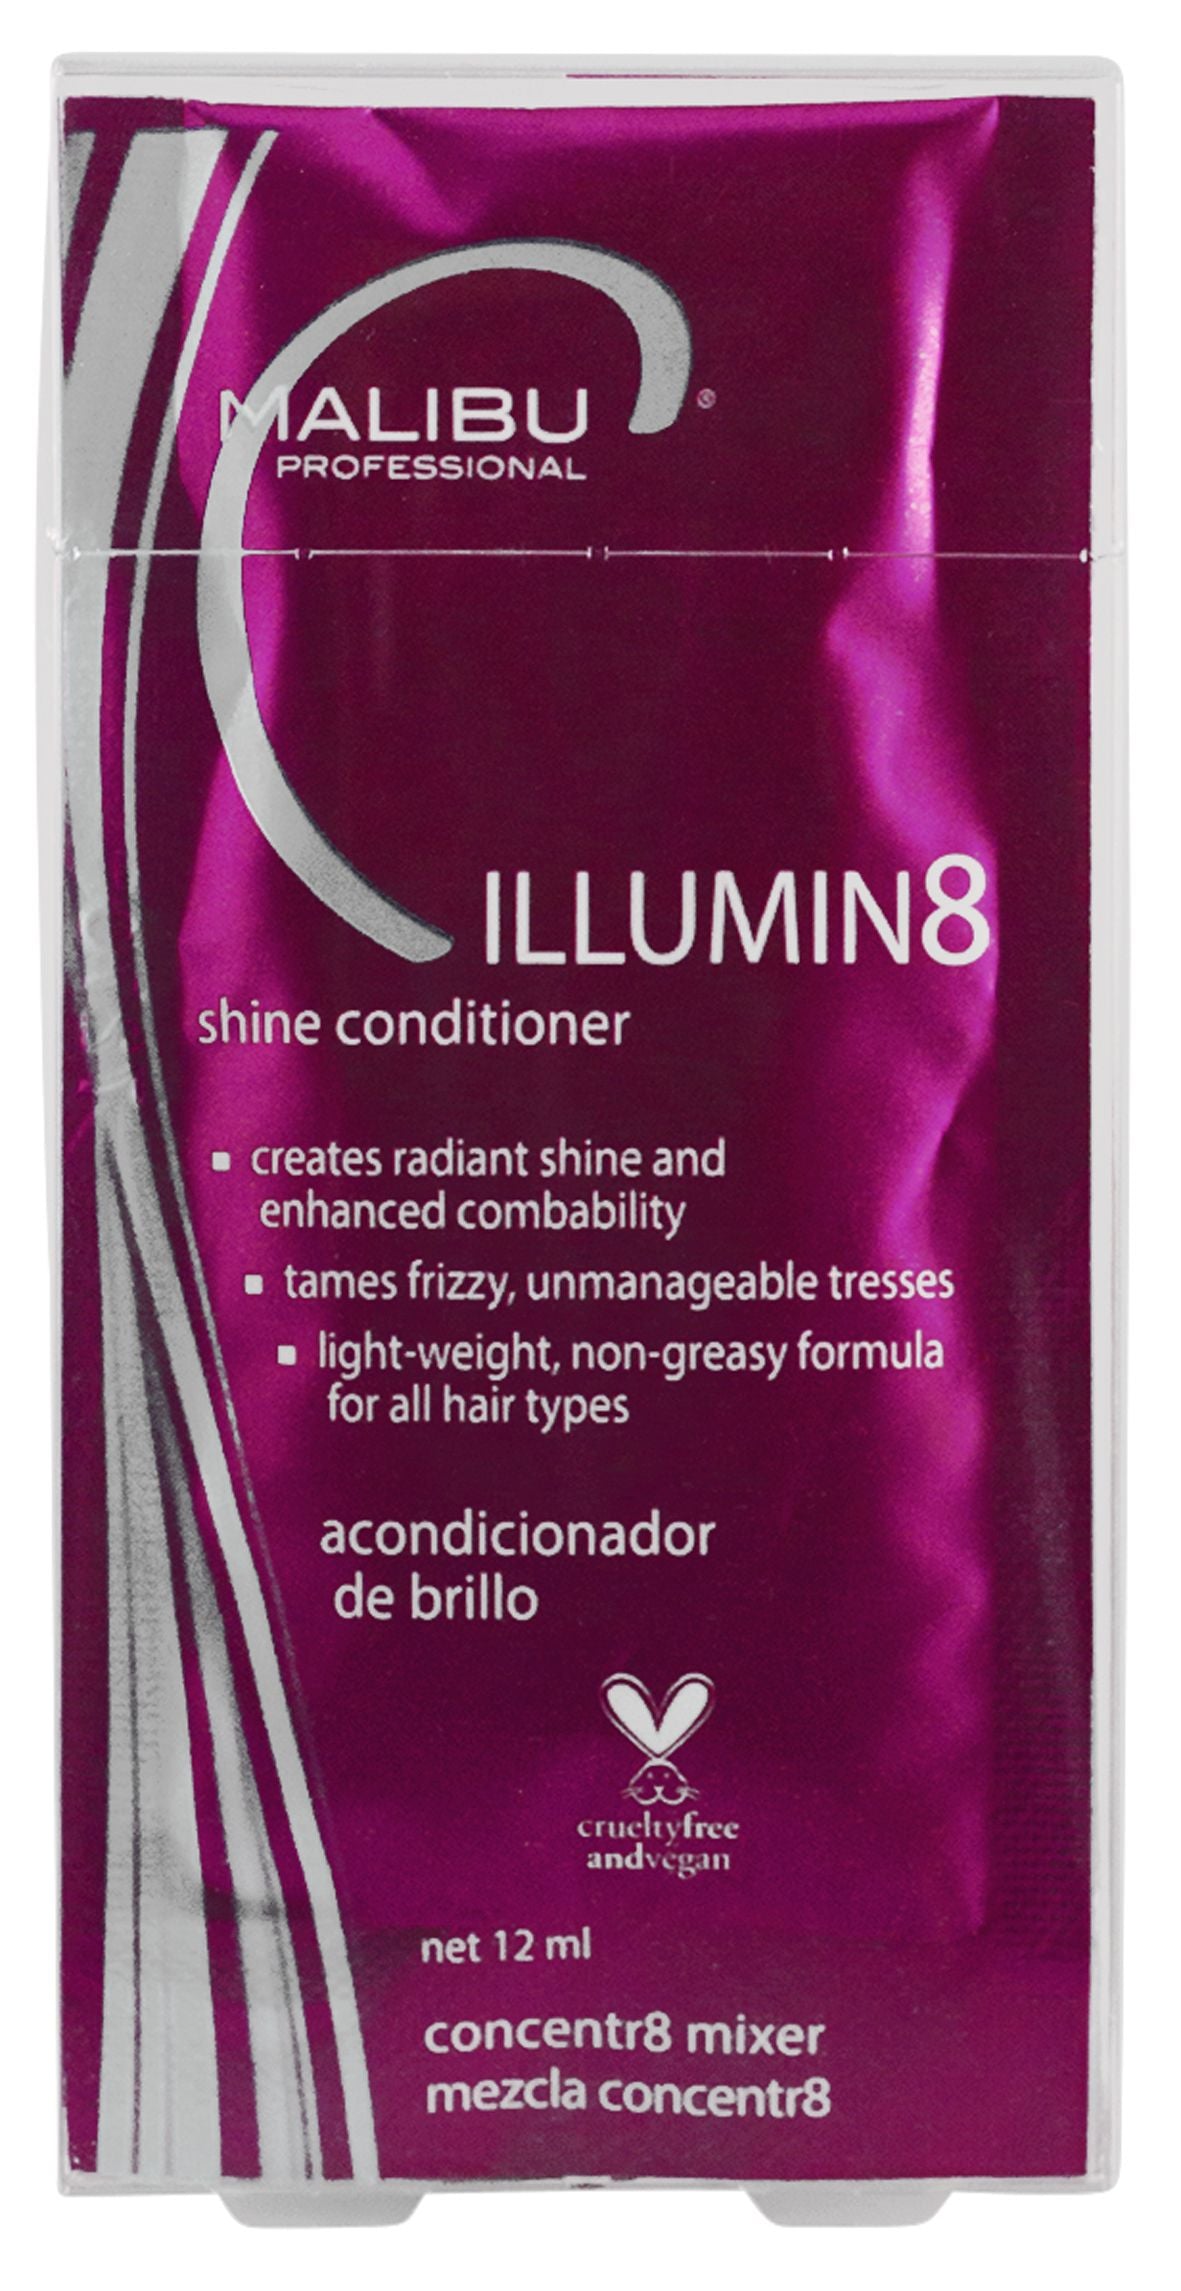 Malibu C Illumin8 Fusion Conditioner 6pc